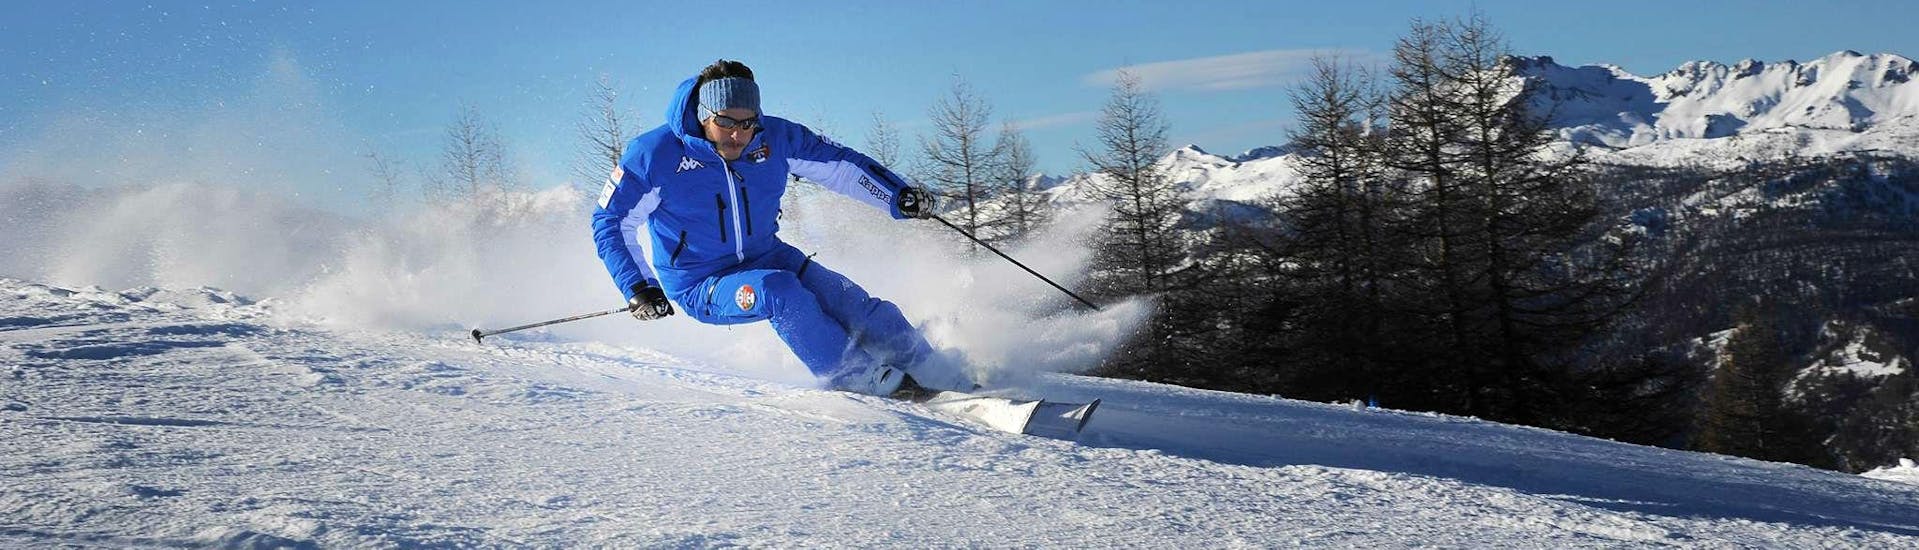 Ein Skilehrer der Skischule Scuola di Sci Olimpionica in Sestriere demonstriert im Rahmen des Angebots Skikurs für Erwachsene - Fortgeschritten die richtige Skitechnik.